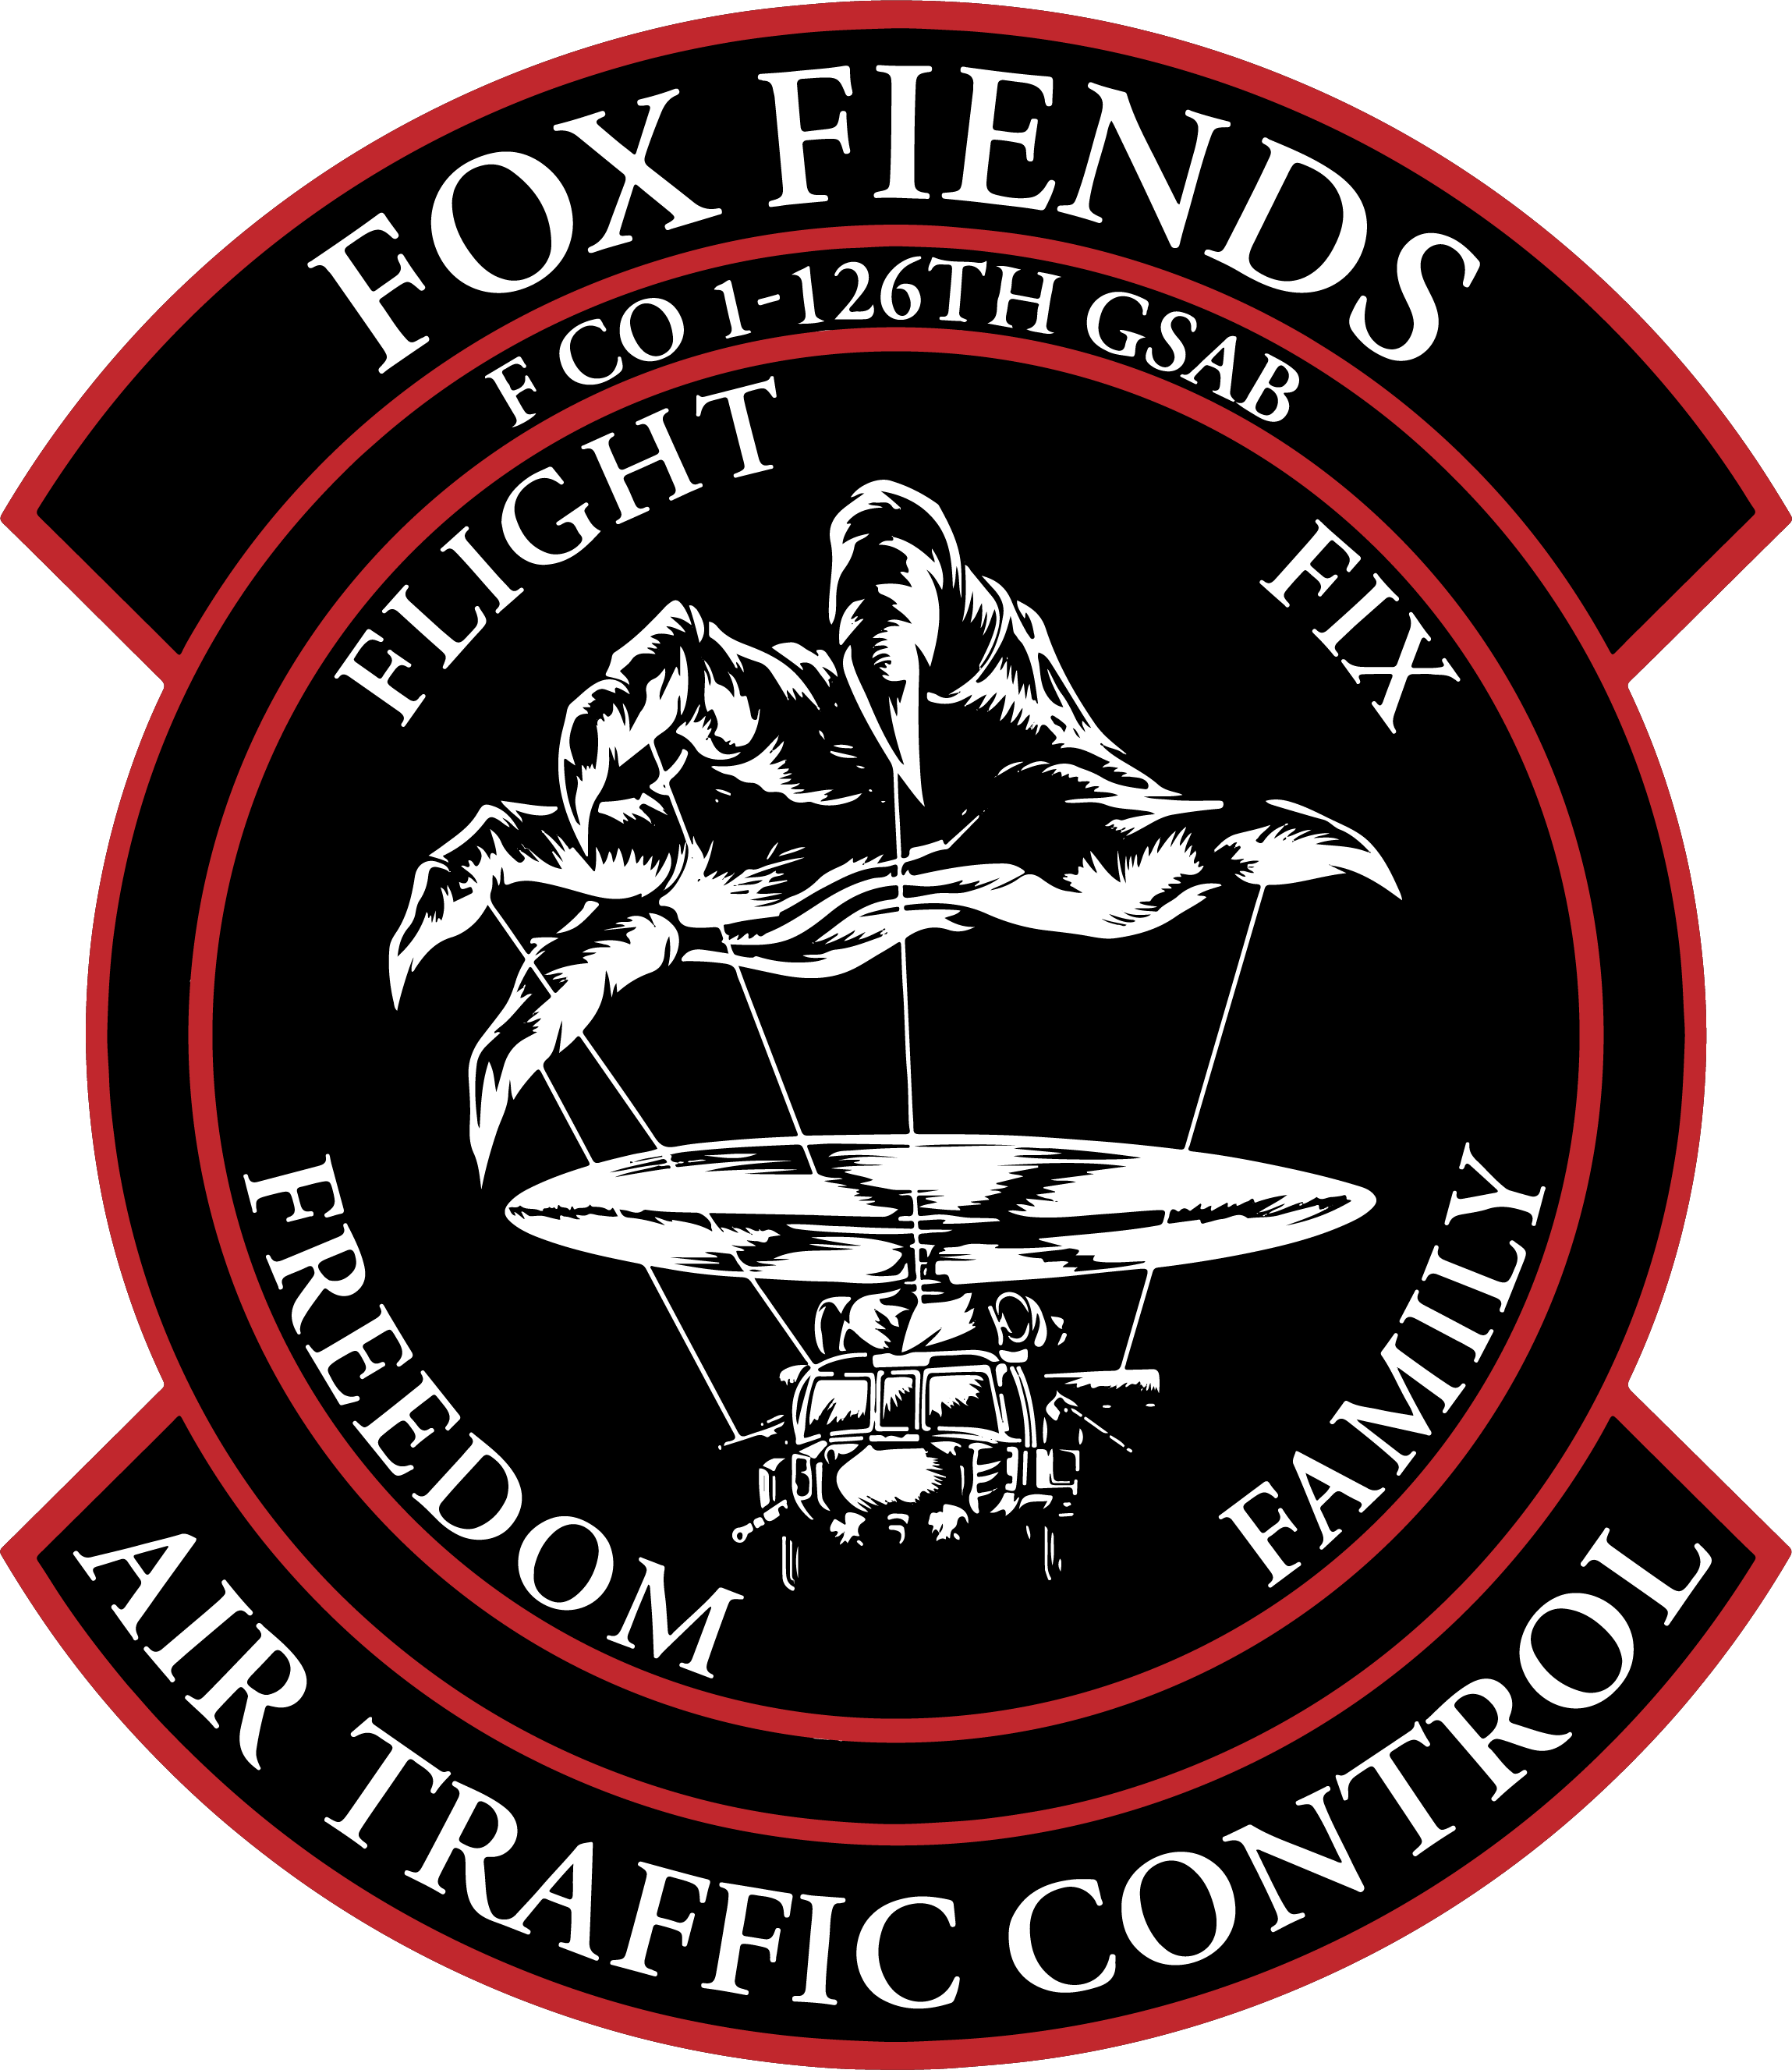 F Co, 1-126 GSAB "Fox Fiends"